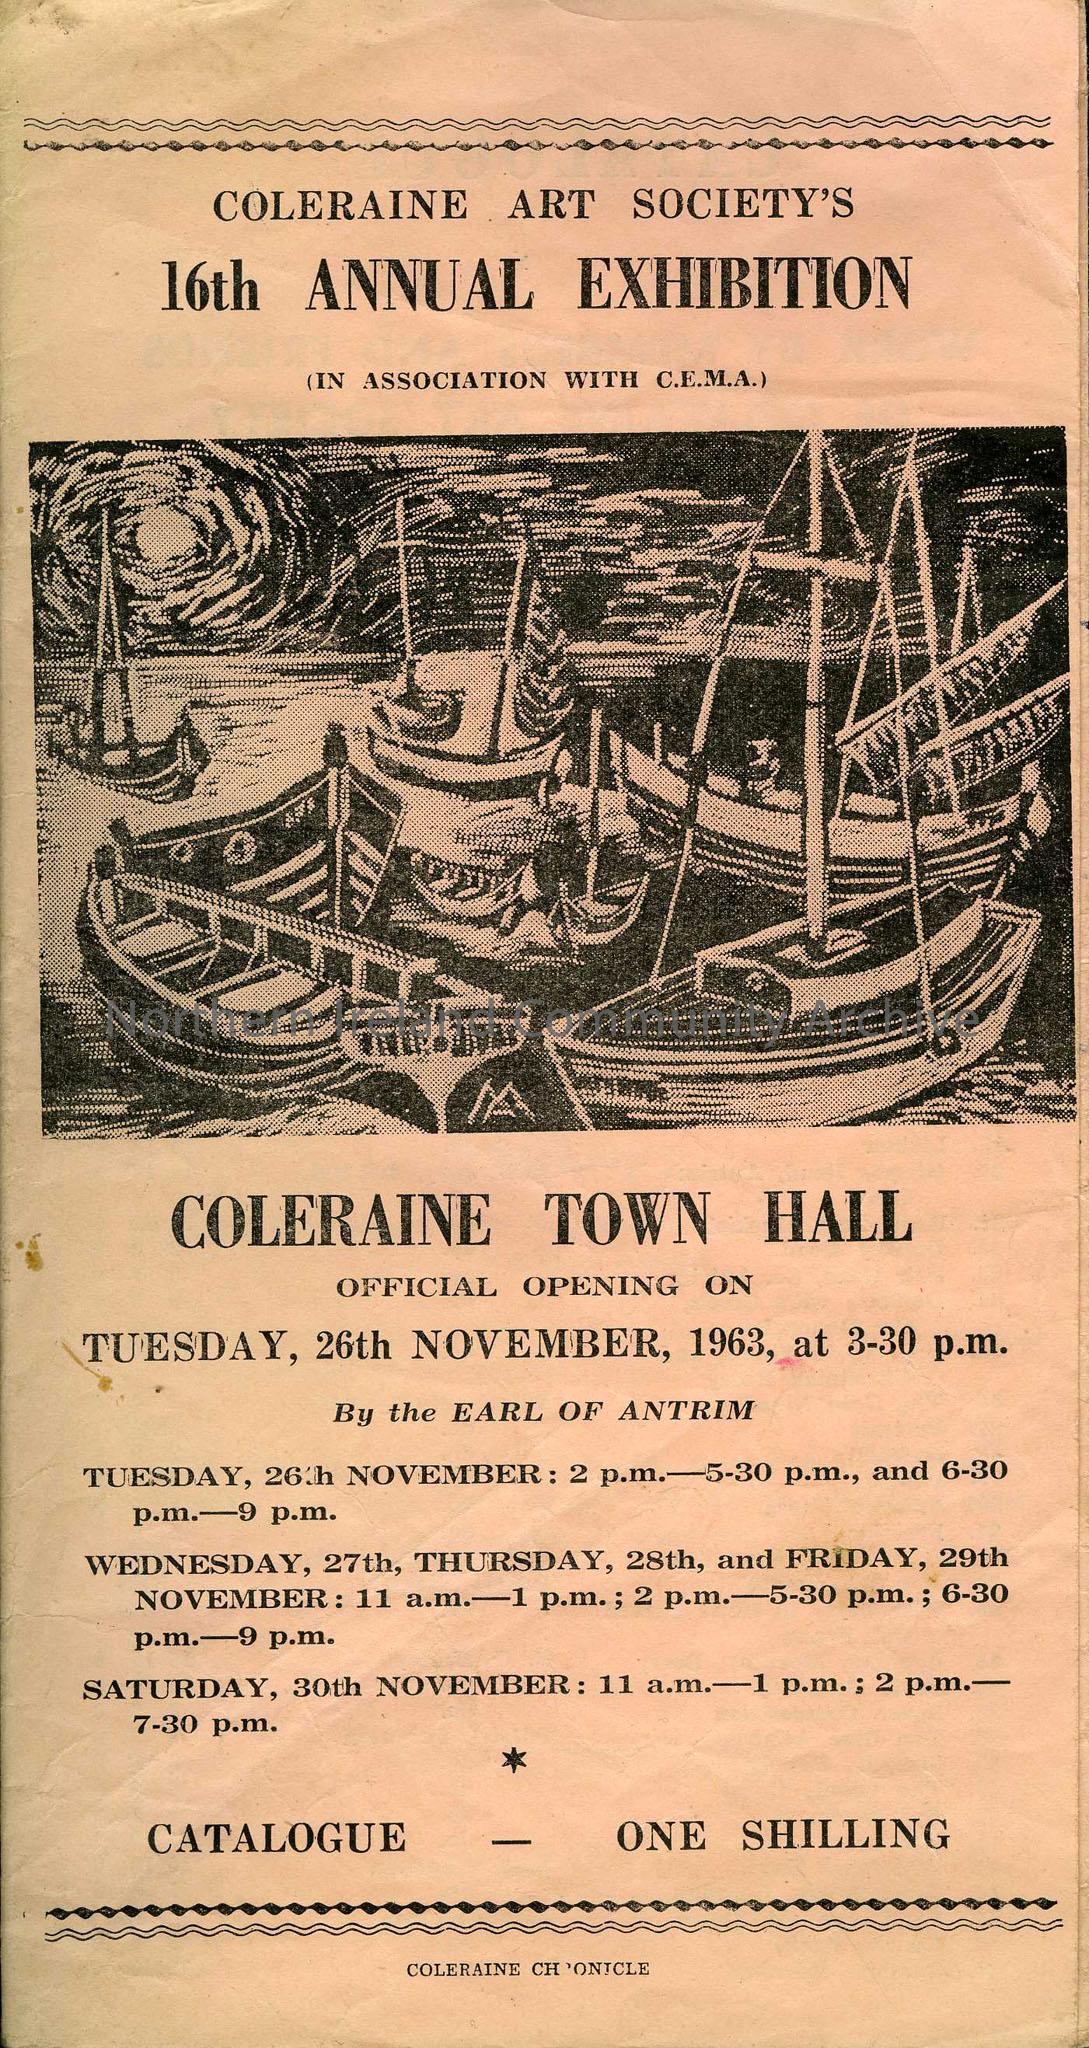 Coleraine Art Society’s 16th Annual Exhibition